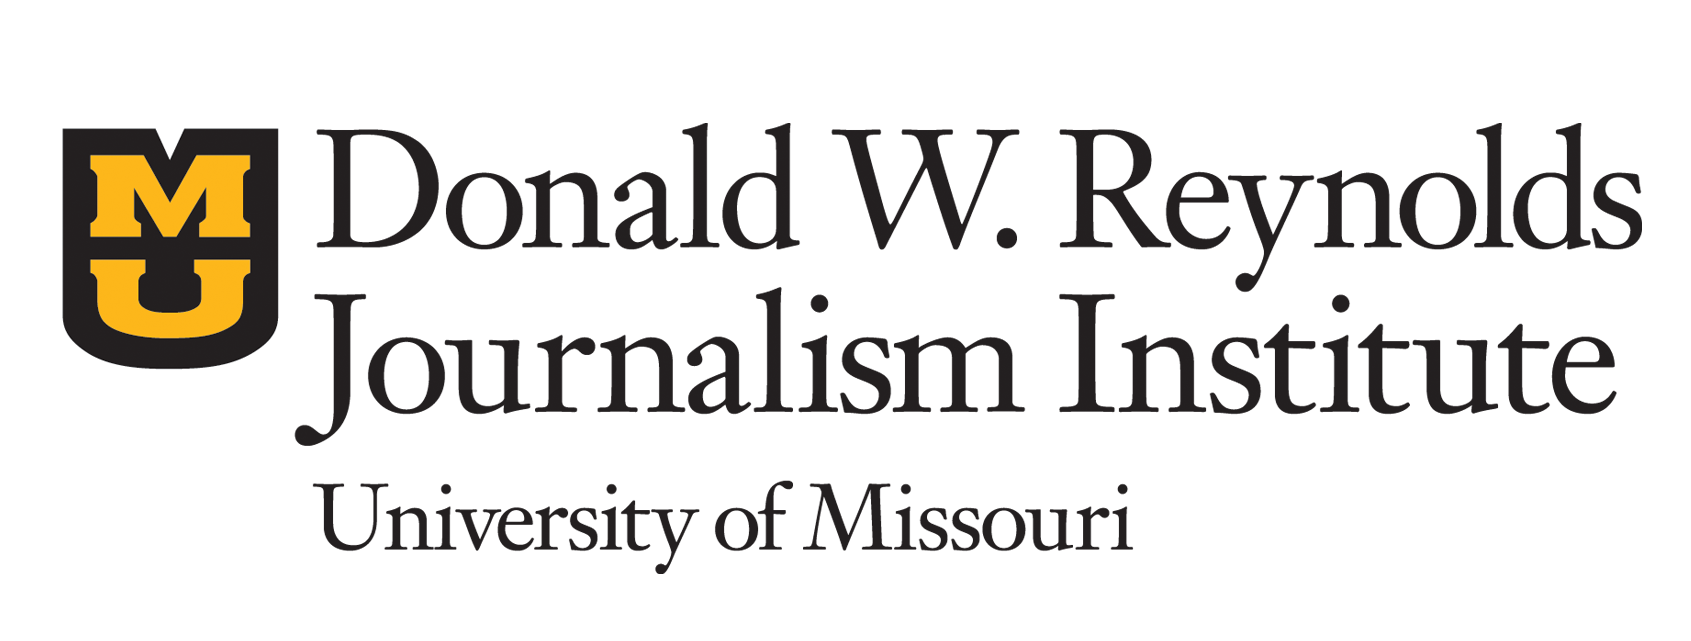 RJI logo